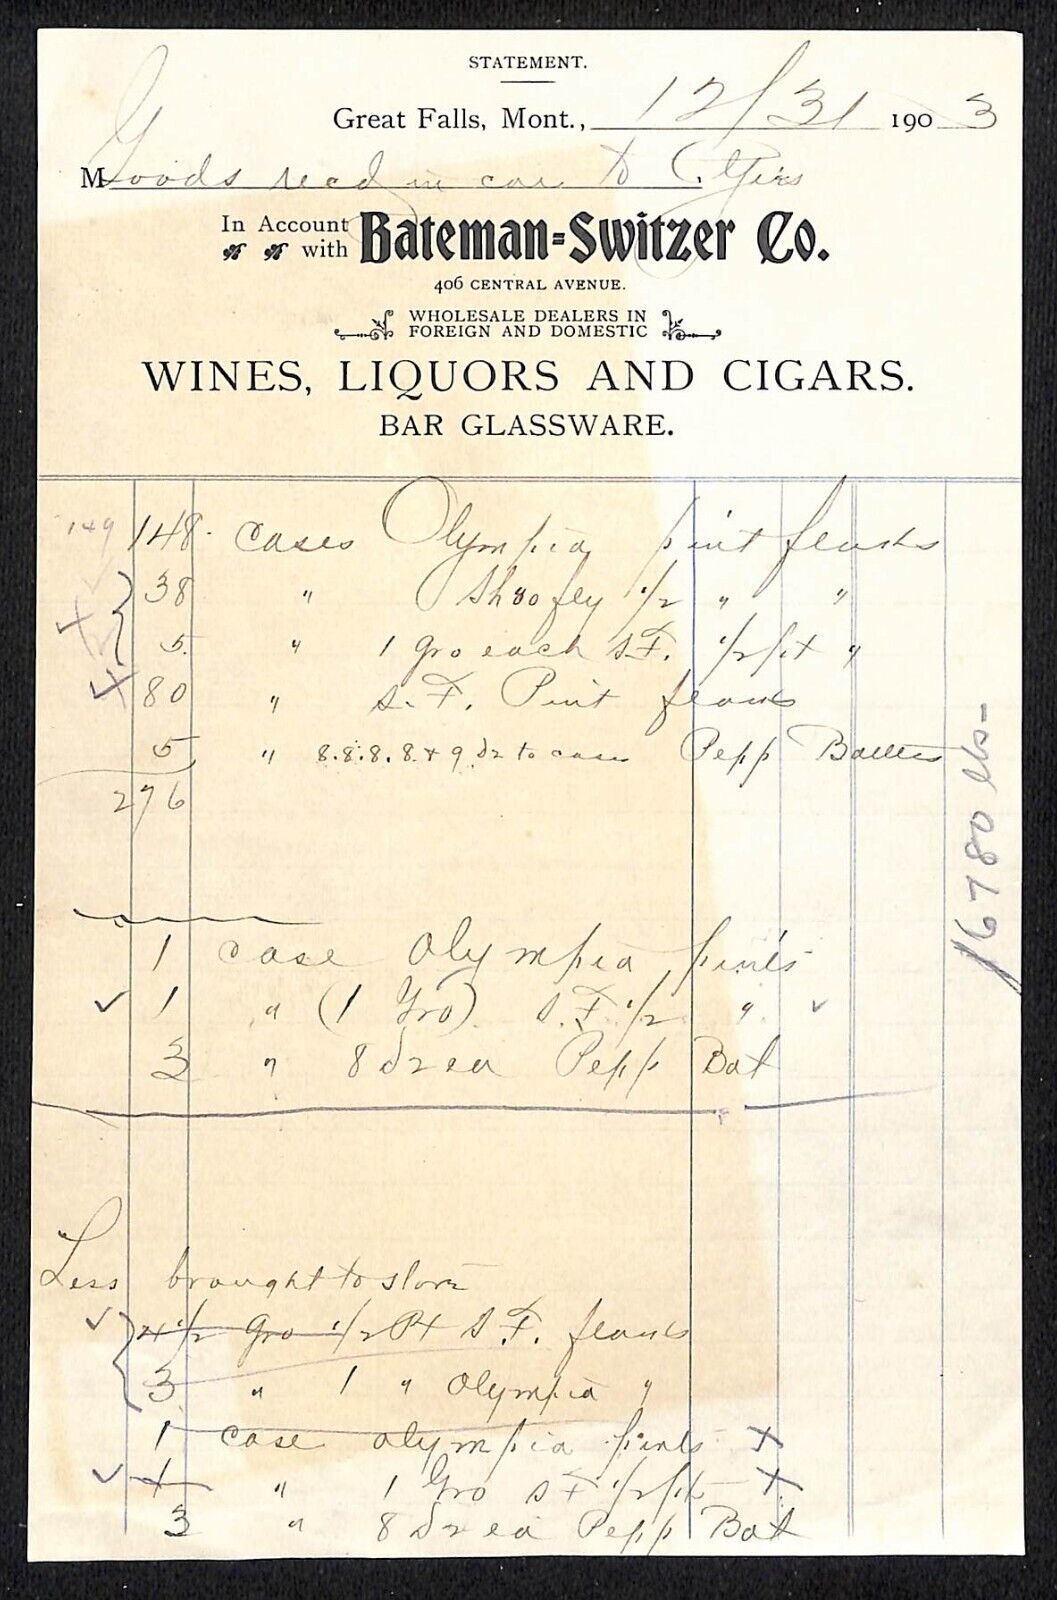 Great Falls, MT Bateman-Switzer Co. Wines Liquors Cigars 1903 Billhead Statement